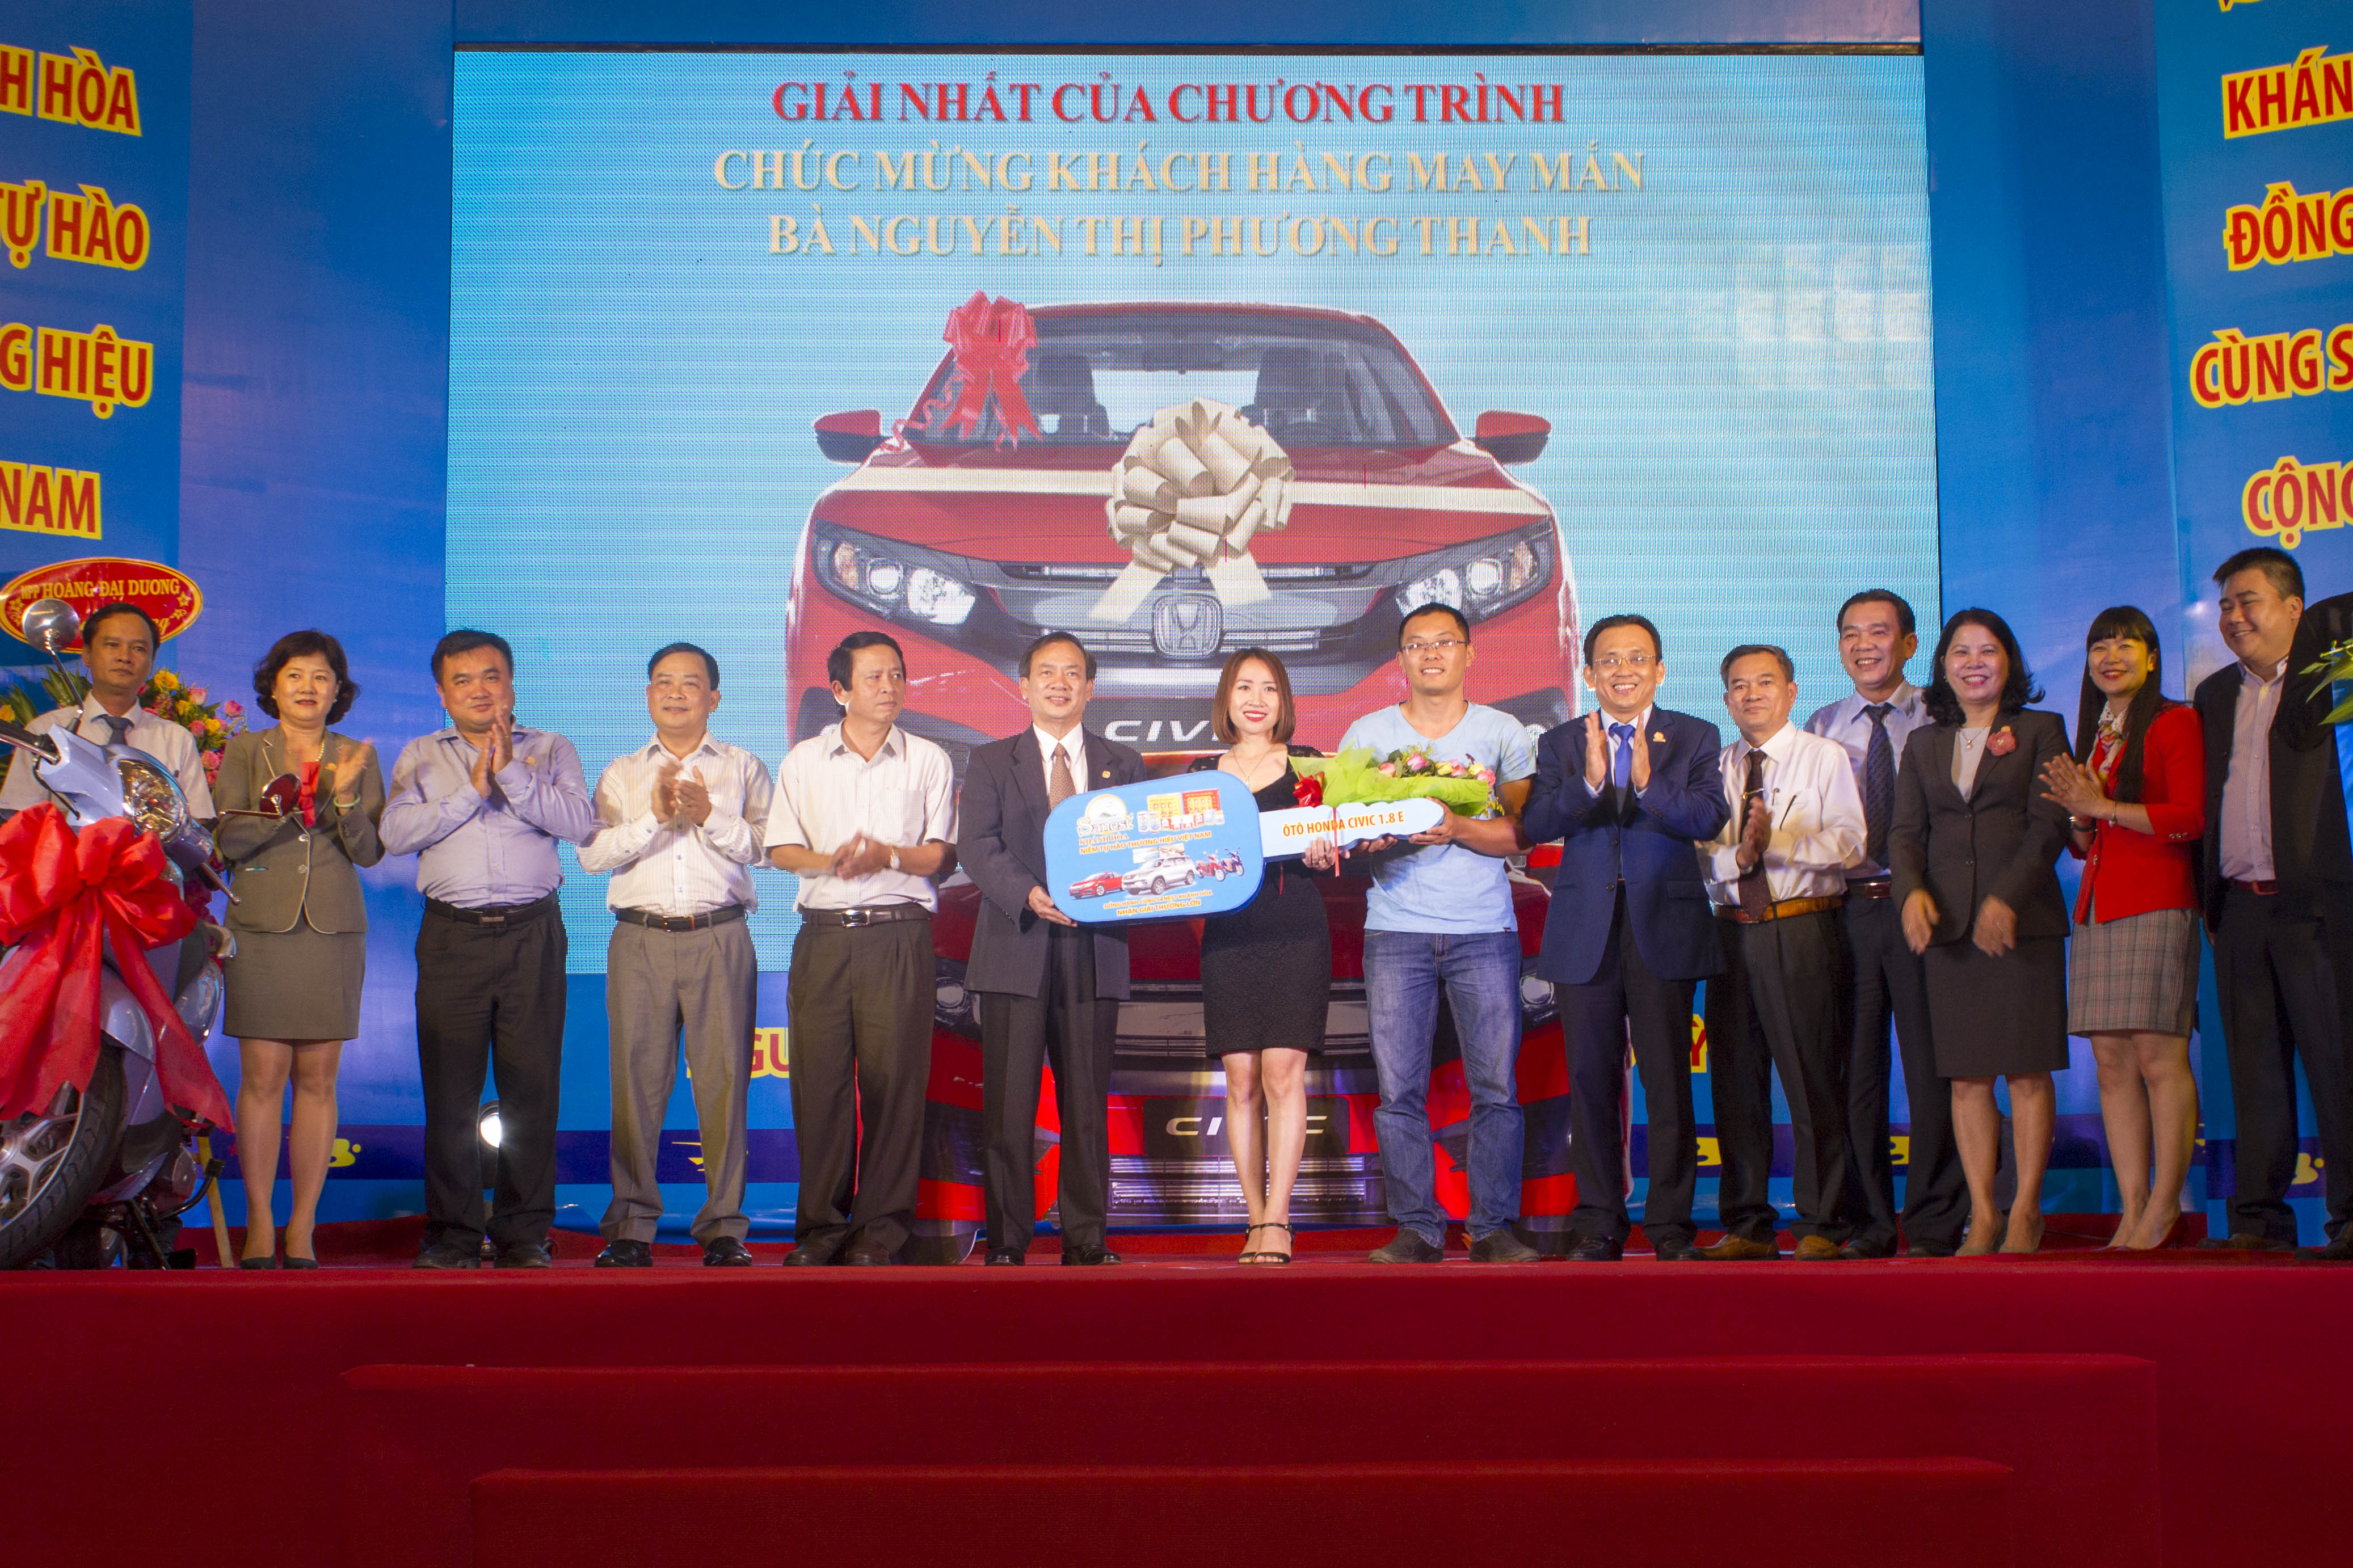 Trao thưởng khách hàng trúng giải Sanest Khánh Hòa - Niềm tự hào thương hiệu Việt Nam tại Hải Phòng